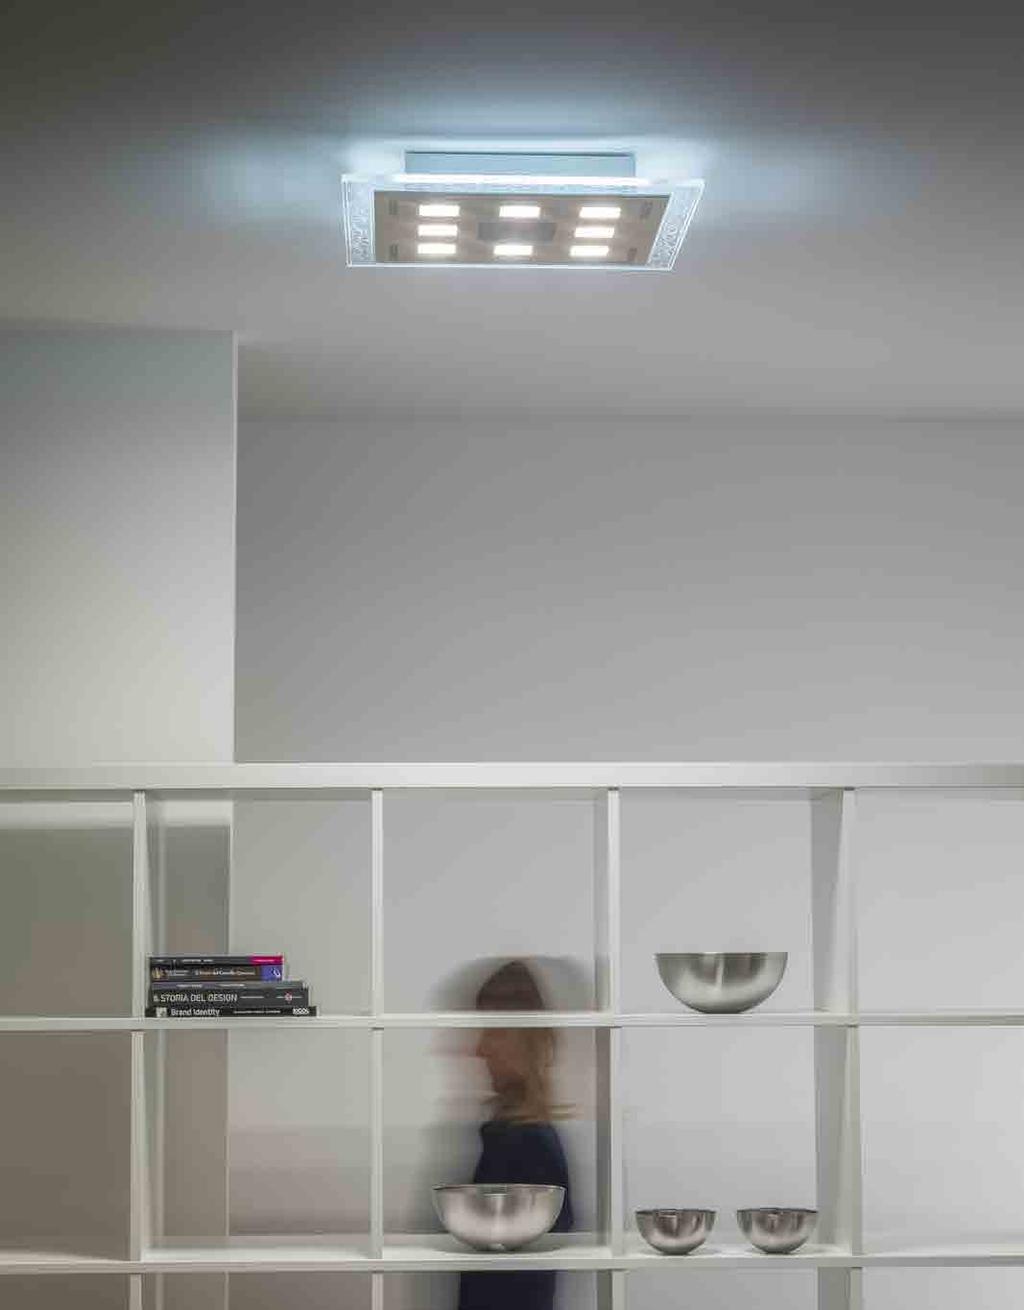 CLEOFE Lampada a LED da soffitto a diffusione. Corpo in alluminio verniciato con possibilità elementi di diversi colori secondo palette RAL. Illuminazione superiore e inferiore.